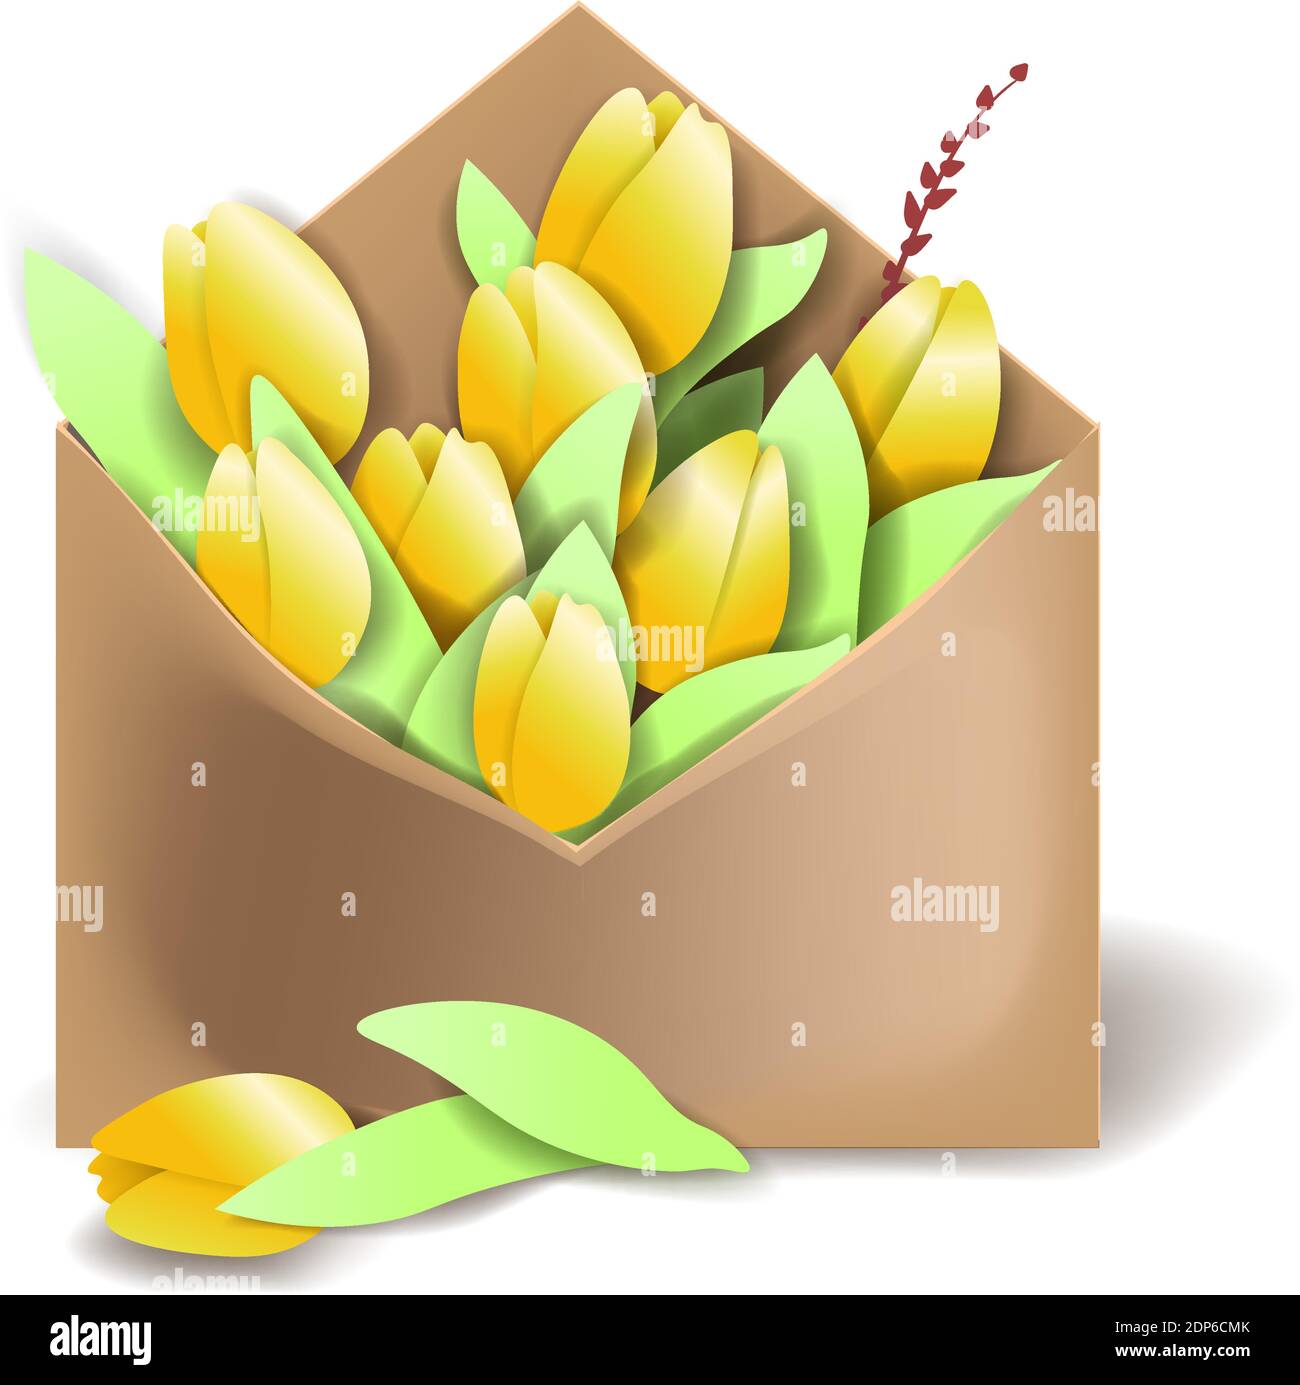 Tulipani di colore giallo nella busta di carta con molle e un fiore che giace separatamente Illustrazione Vettoriale